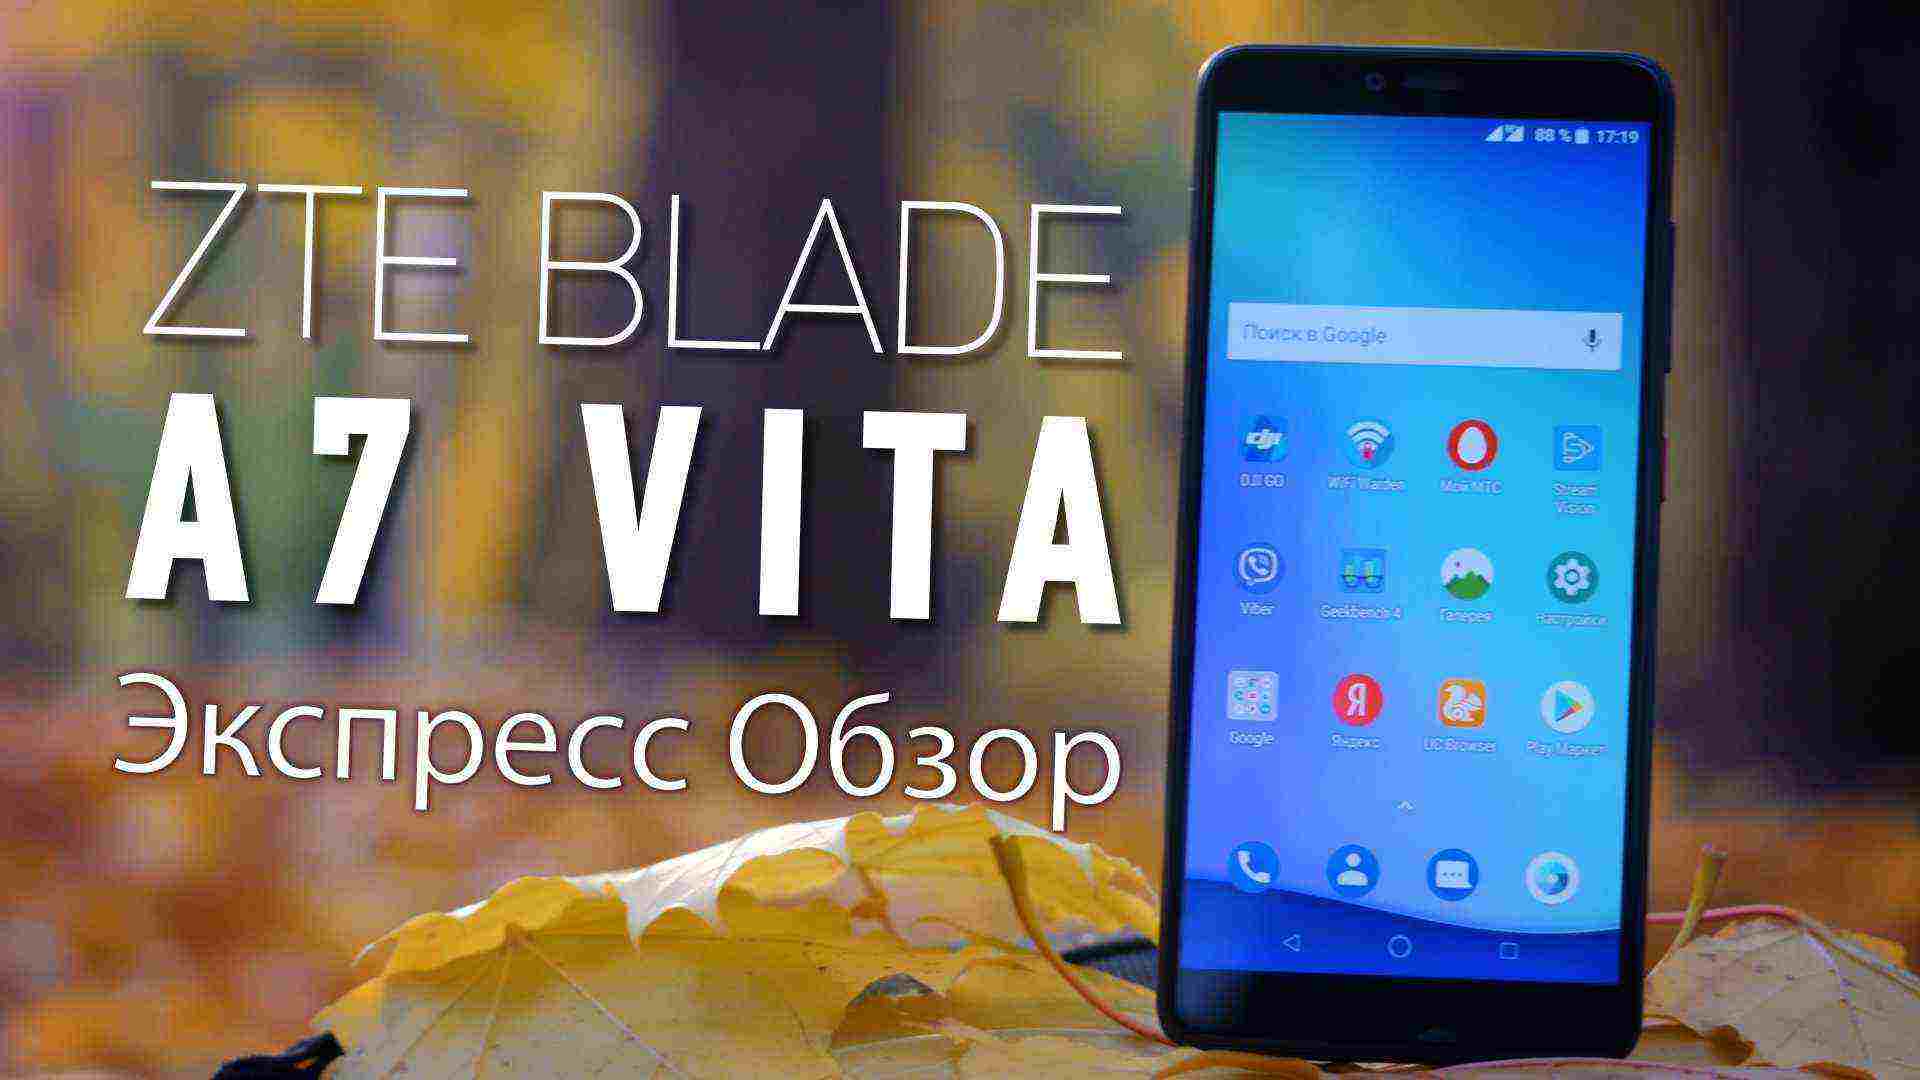 Экспресс обзор ZTE Blade A7 Vita.